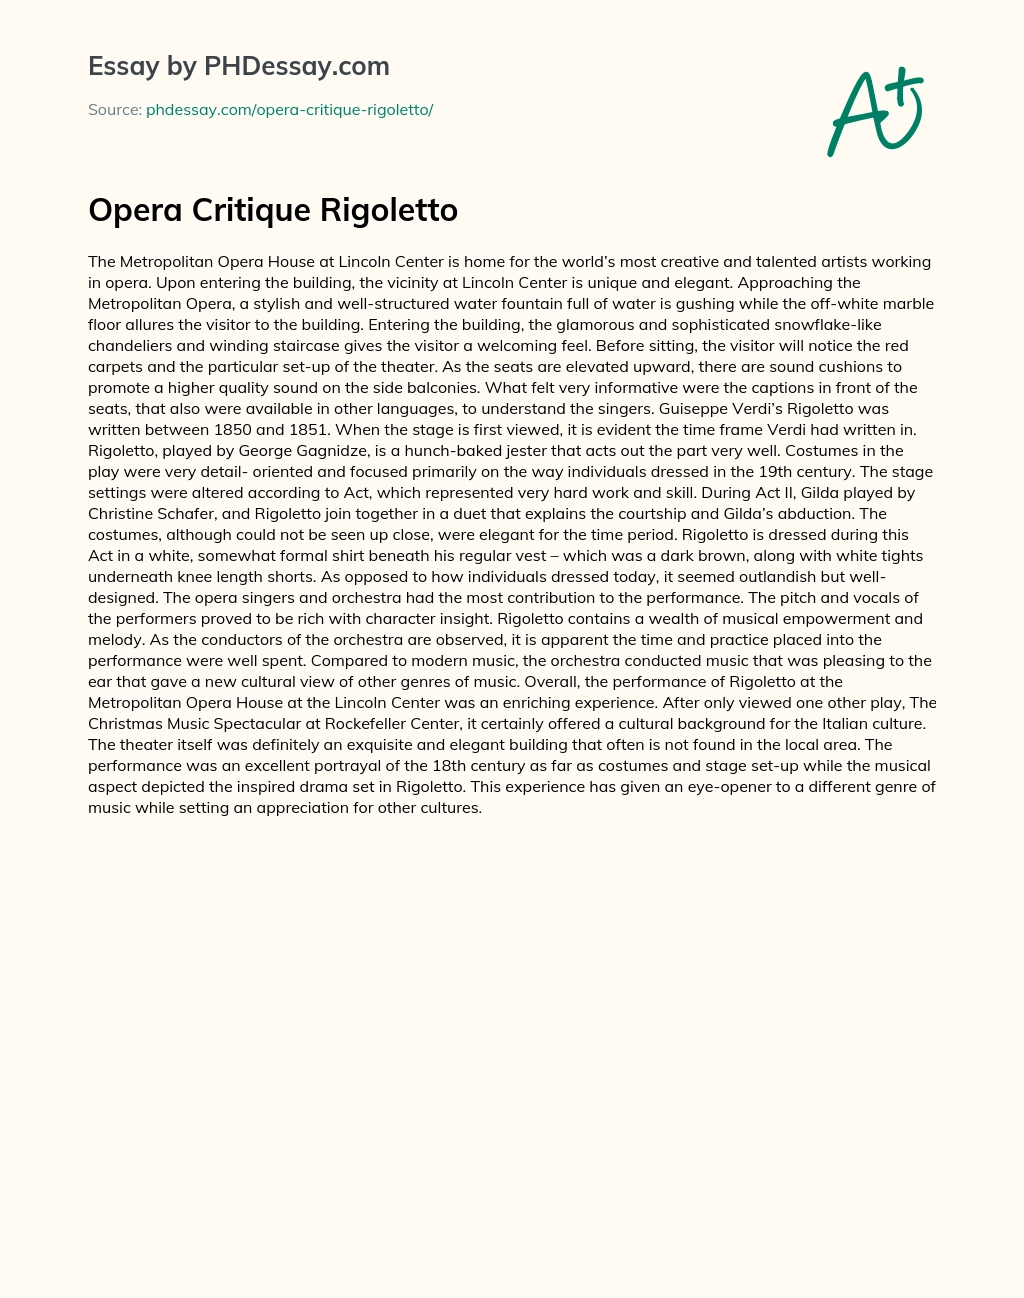 Opera Critique Rigoletto essay